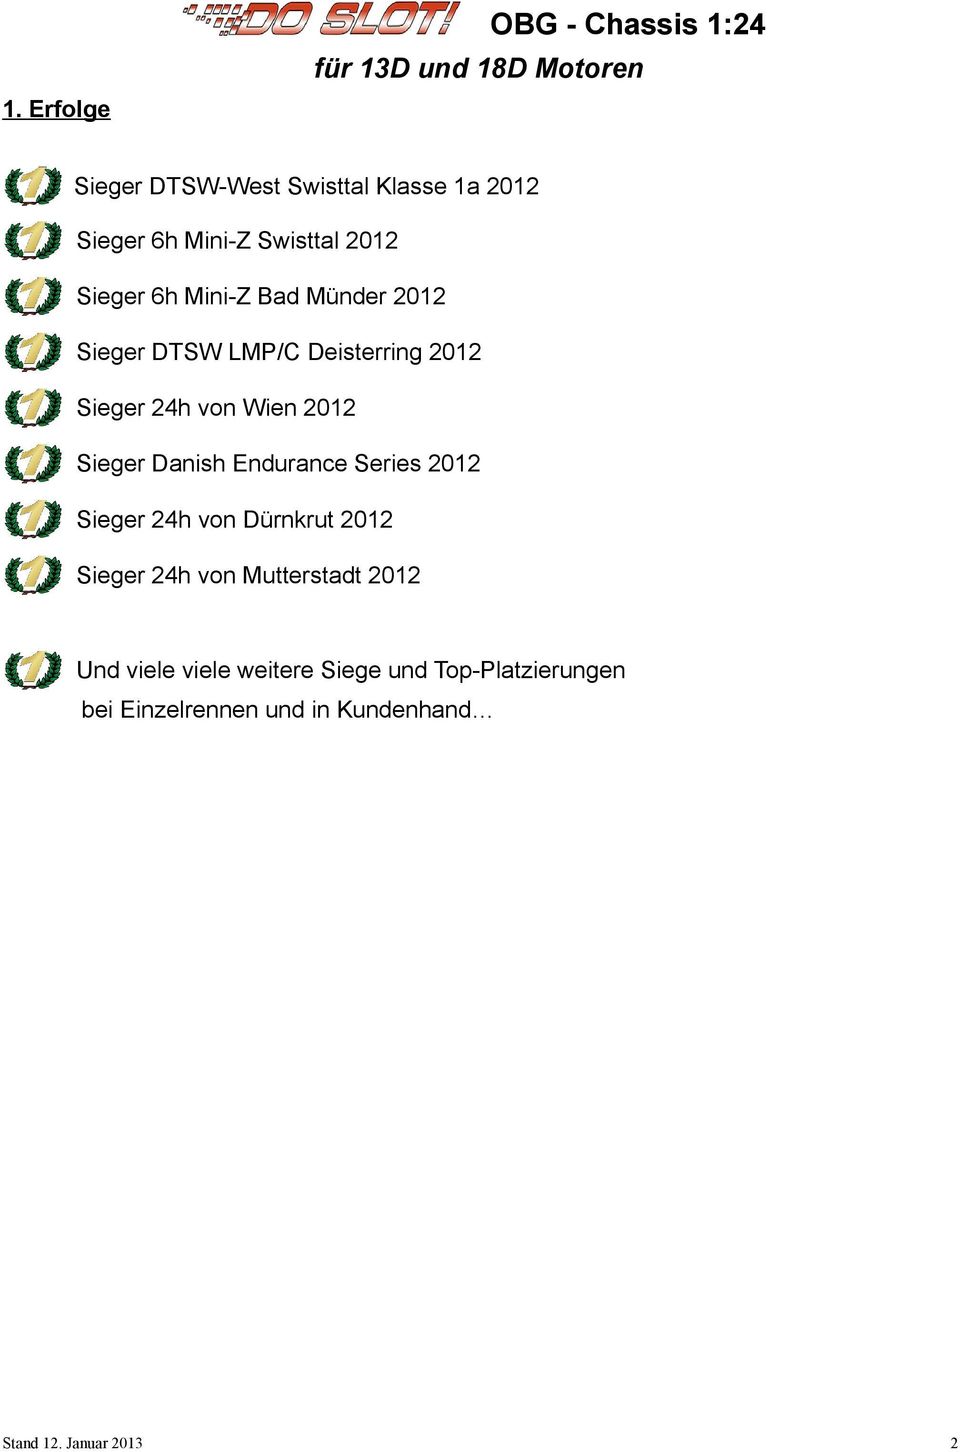 Bad Münder 2012 - Sieger DTSW LMP/C Deisterring 2012 - Sieger 24h von Wien 2012 - Sieger Danish Endurance